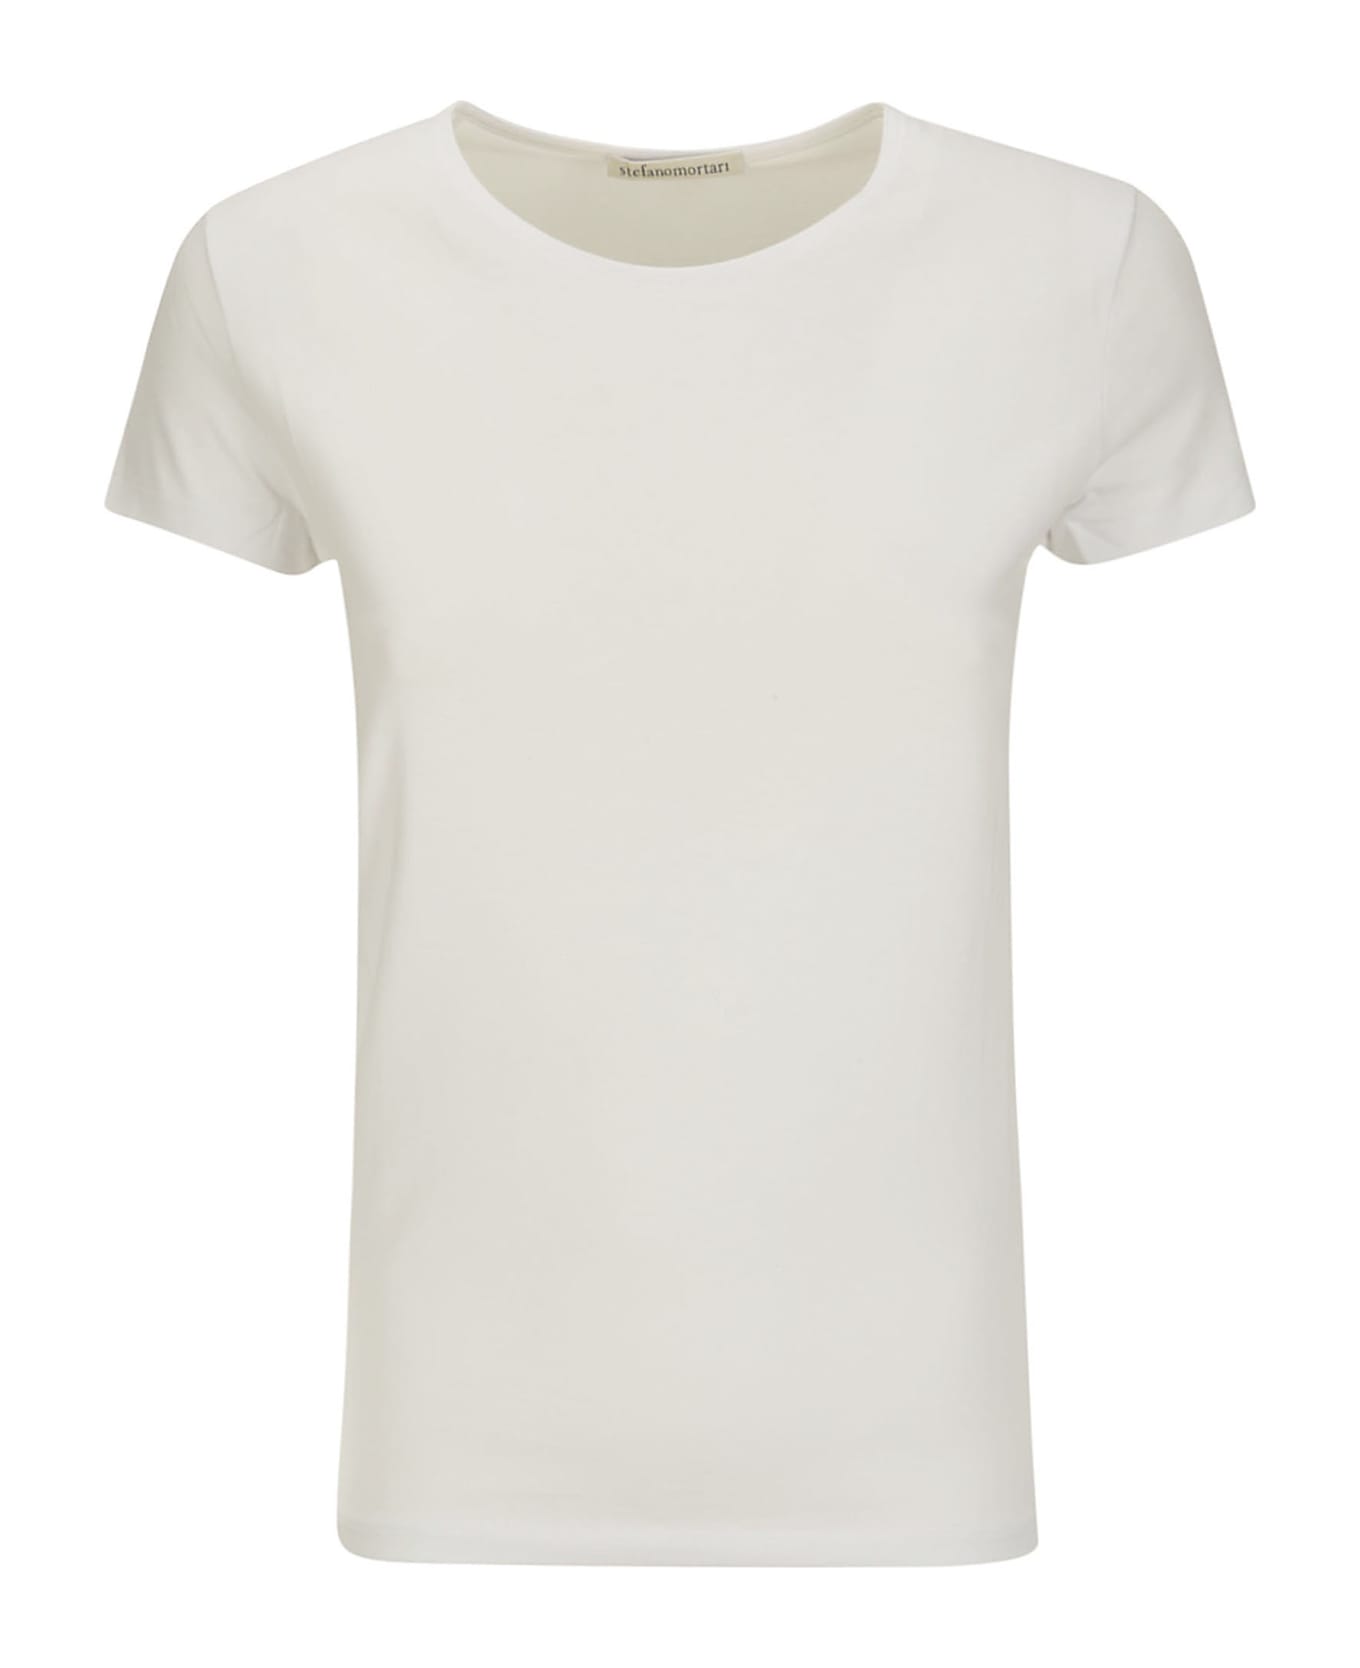 Stefano Mortari M/s Crew Neck T-shirt - WHITE Tシャツ